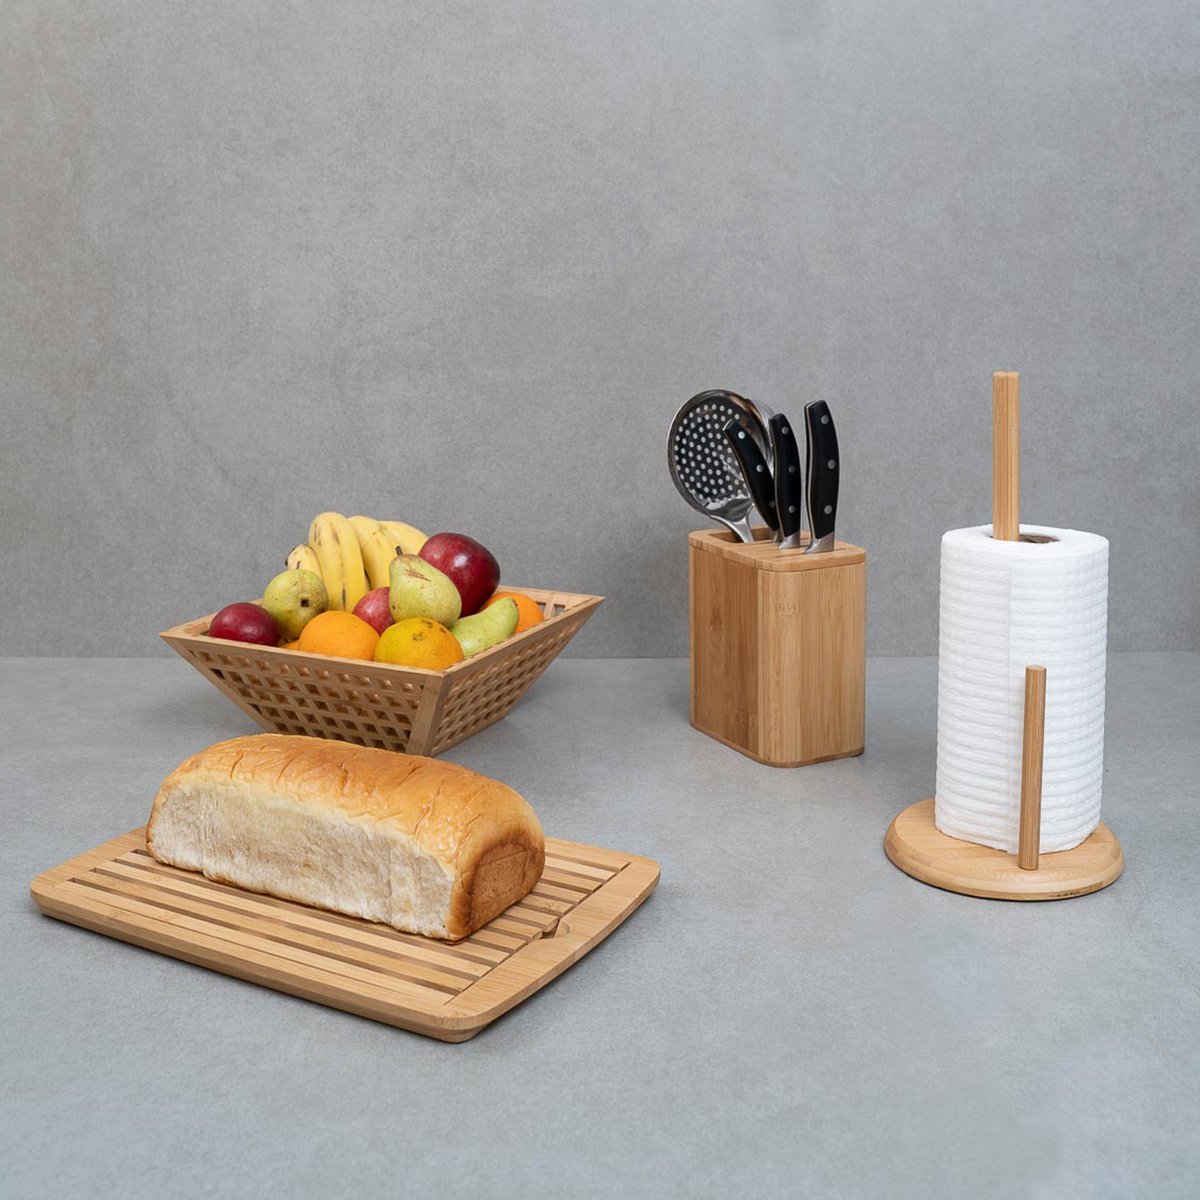 Kit com fruteira vazada, porta papel toalha, porta facas e tábua migalheira de pão de bambu - Oikos - 5